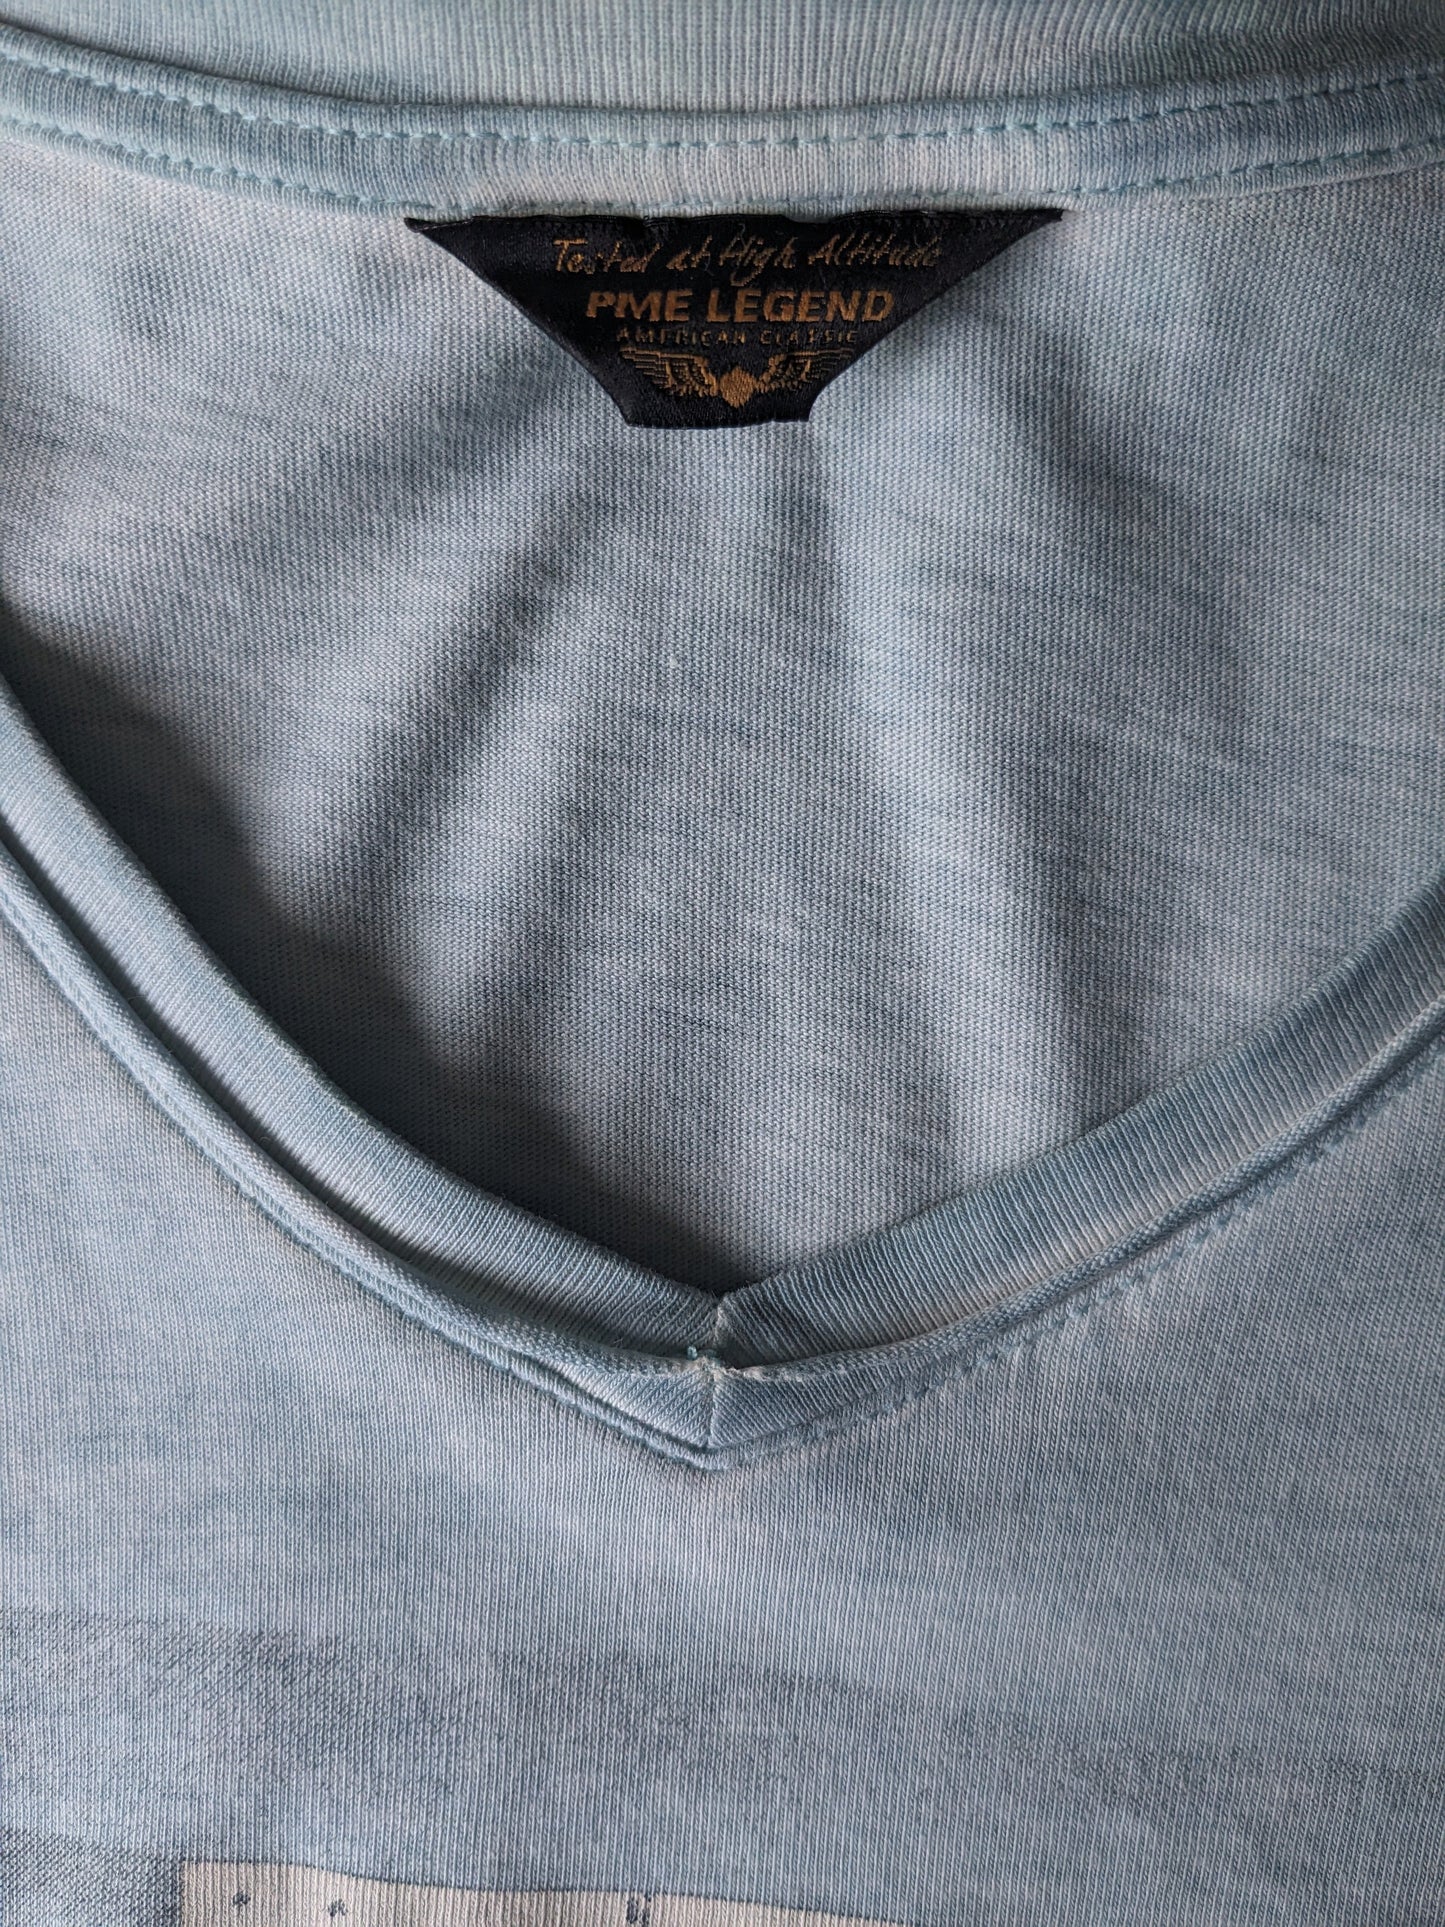 Camisa de leyenda de PME con cuello en V. Azul claro mezclado con impresión. Talla L.